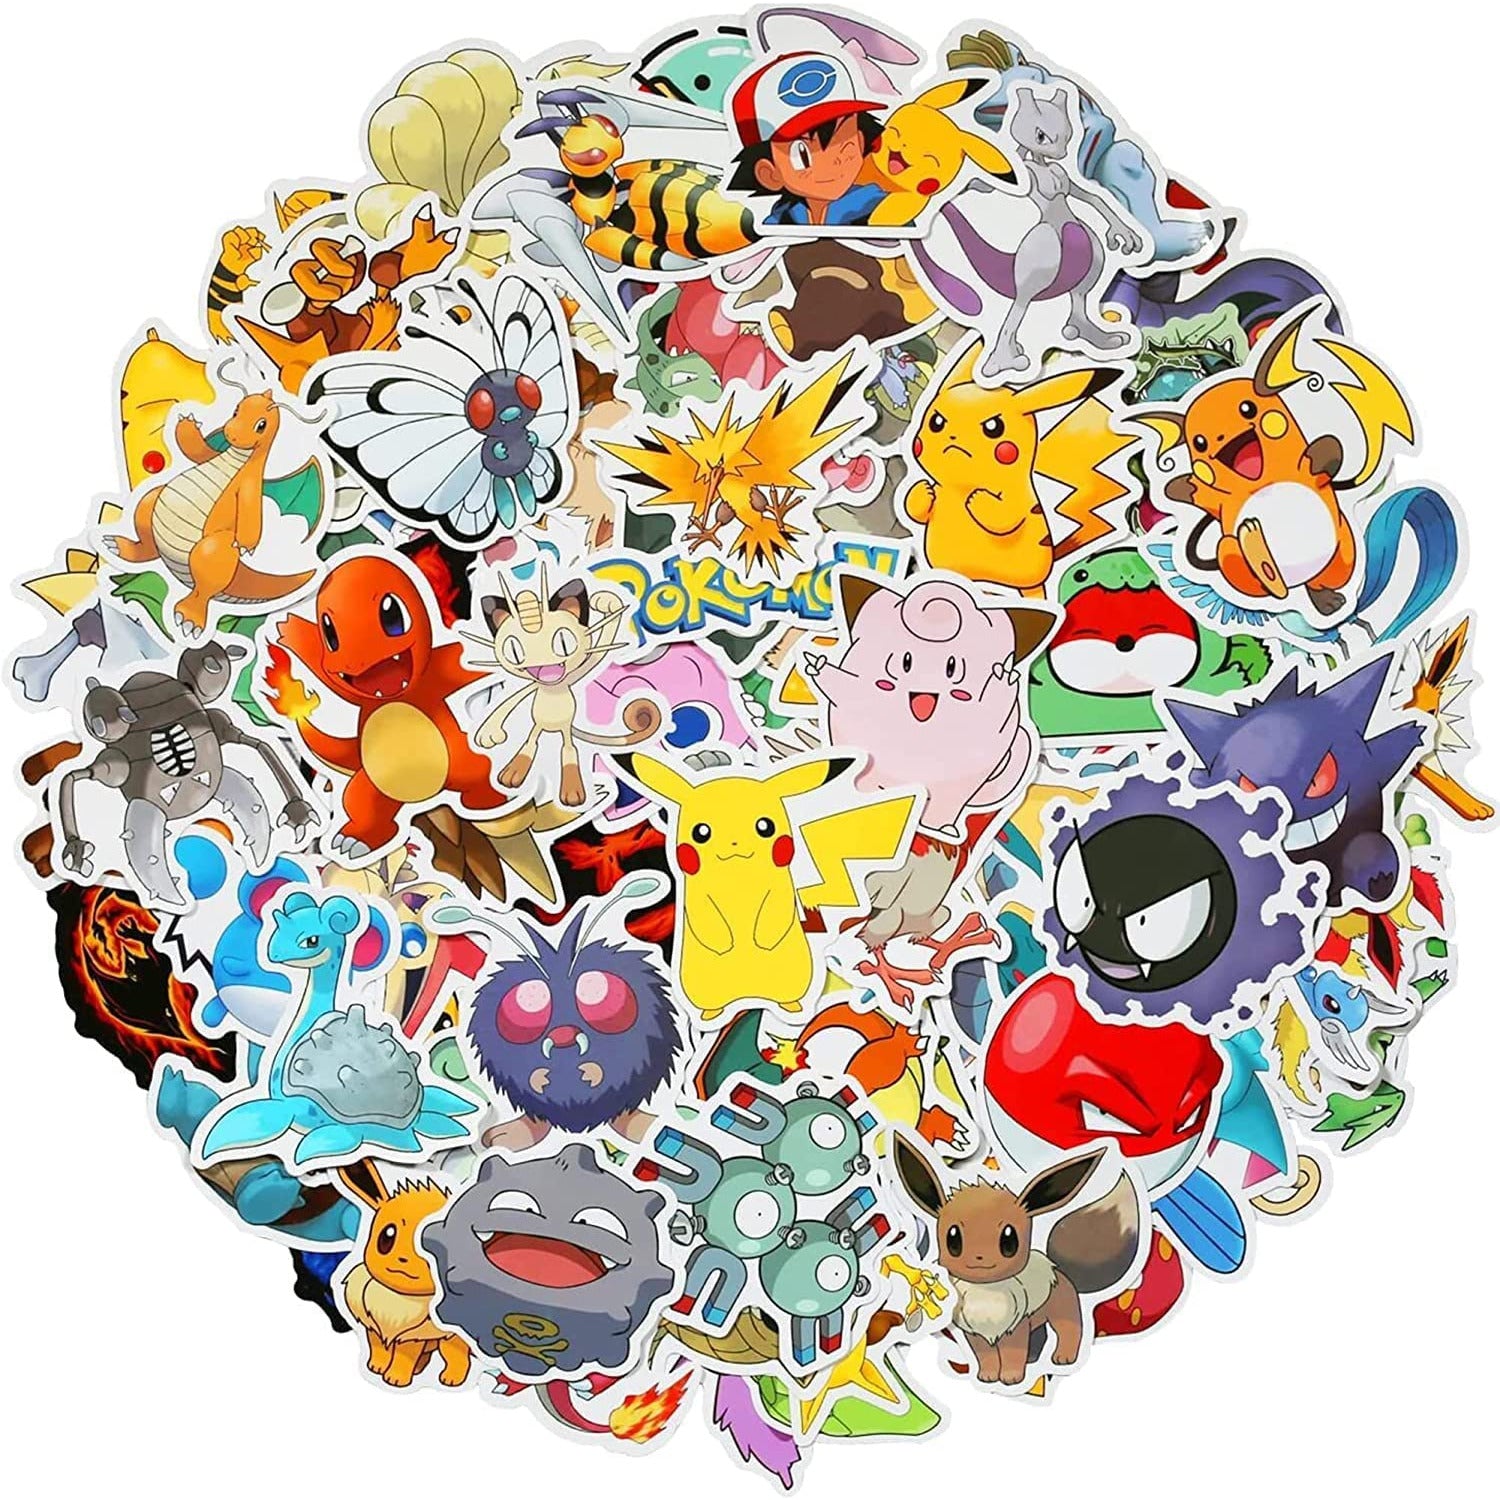 Stickers de Pokemon - Vinyl Waterproof (10 unidades)